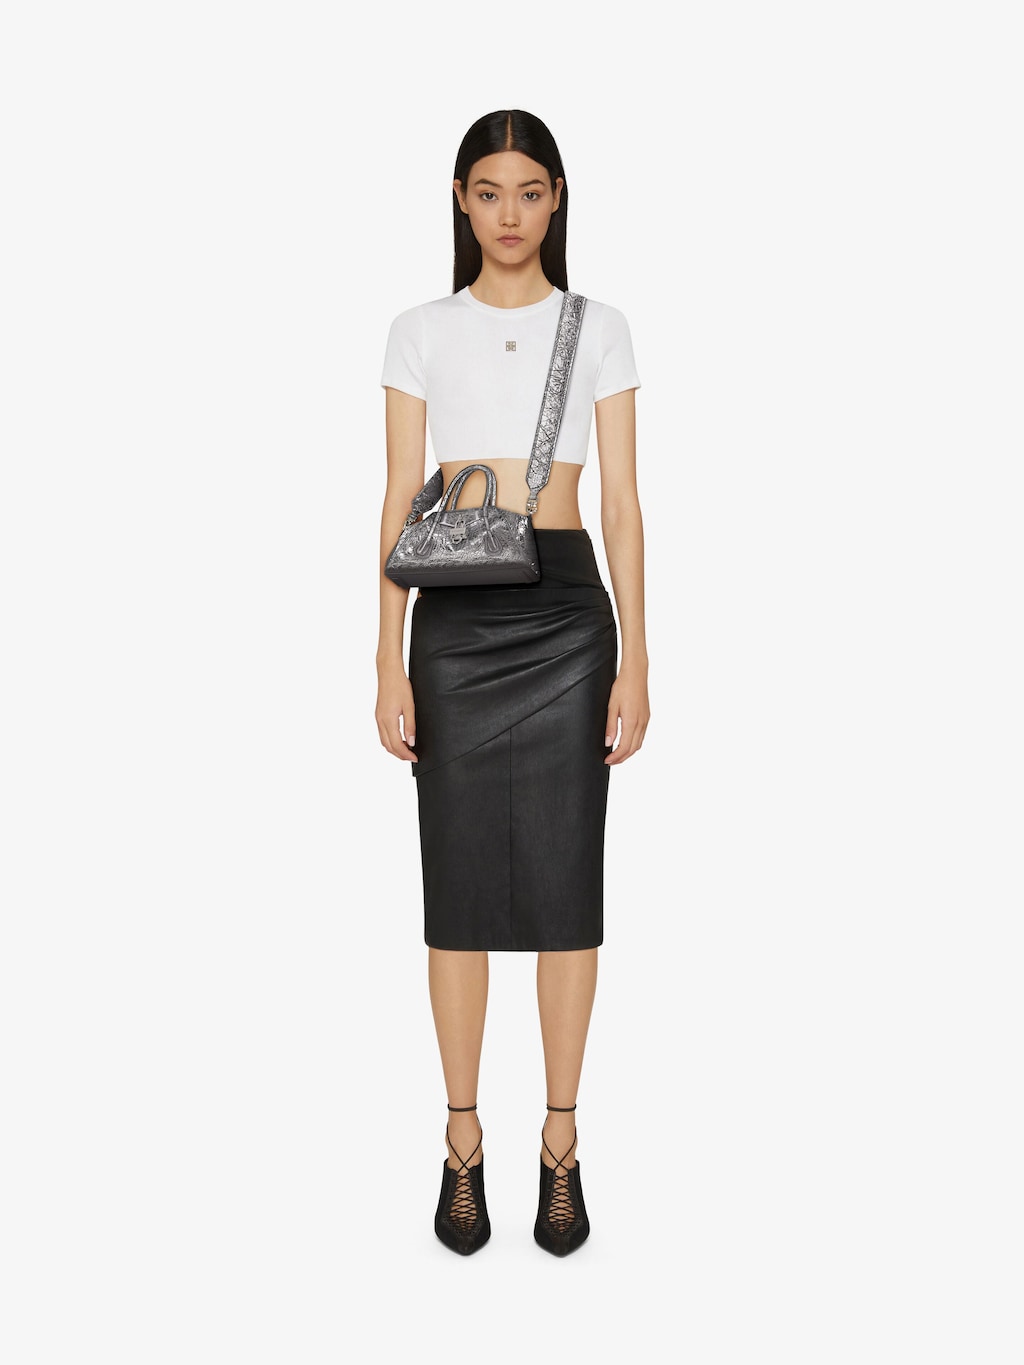 Givenchy Antigona Bags Collection for Women | Givenchy US